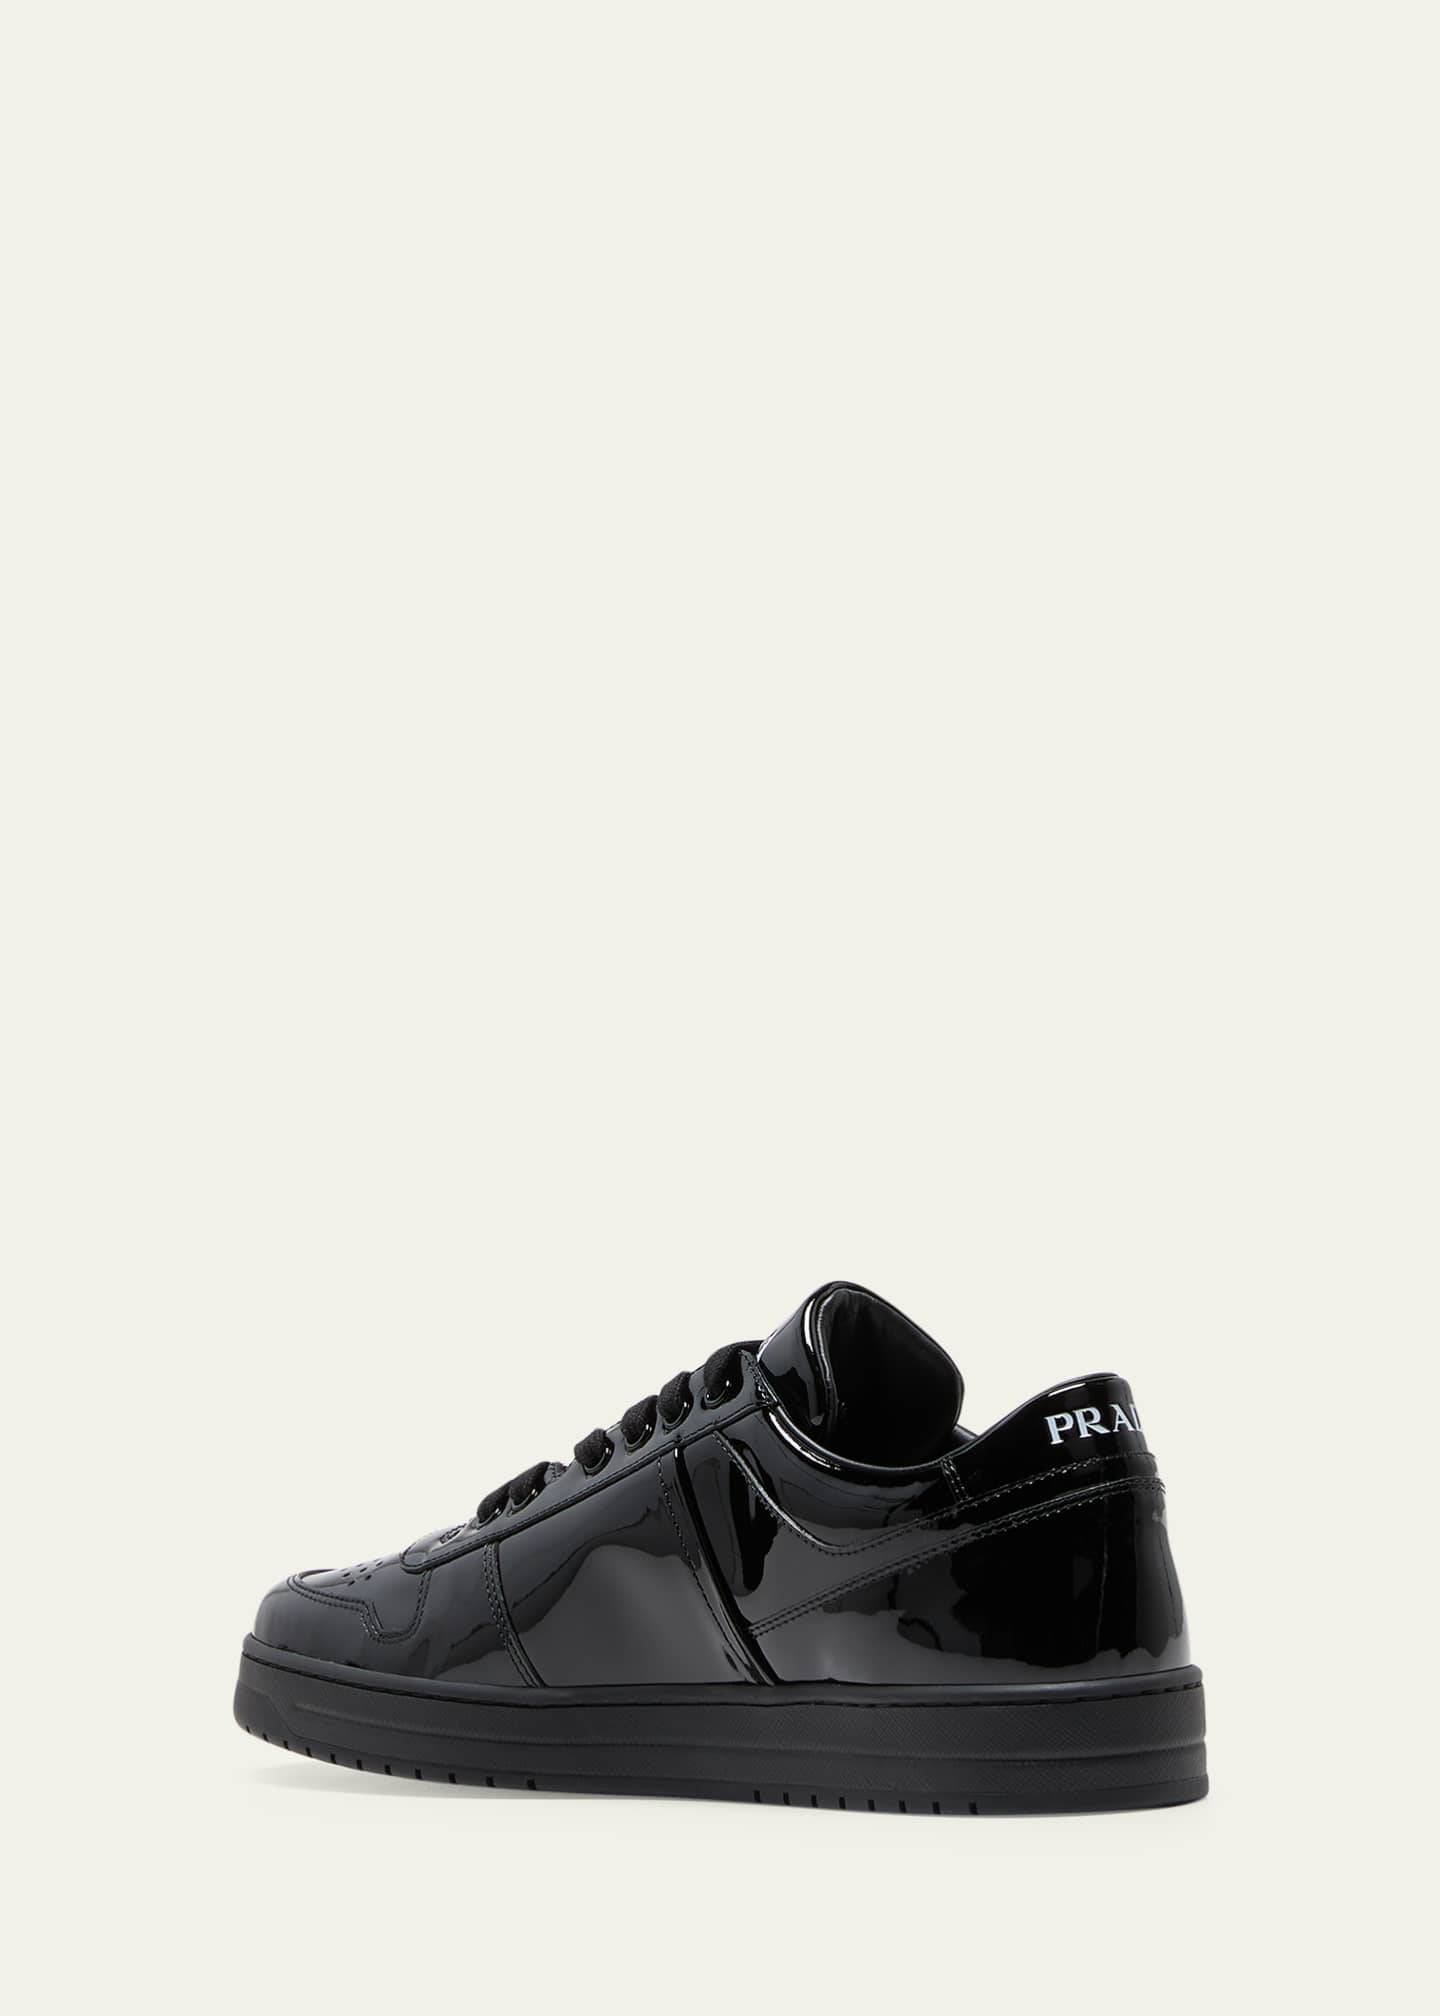 Prada Men's Downtown Patent Leather Low-Top Sneakers - Bergdorf Goodman